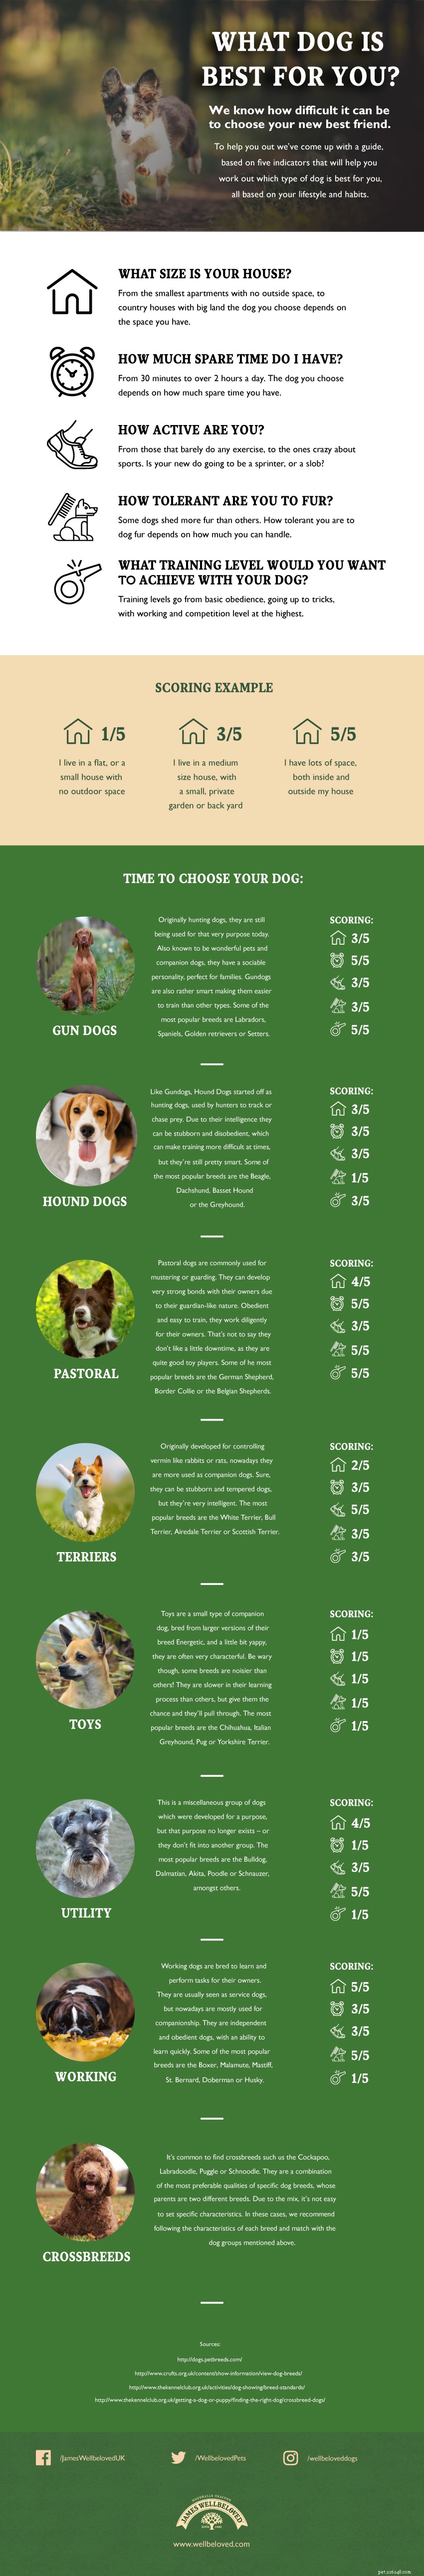 Welke hond moet je nemen - Infographic